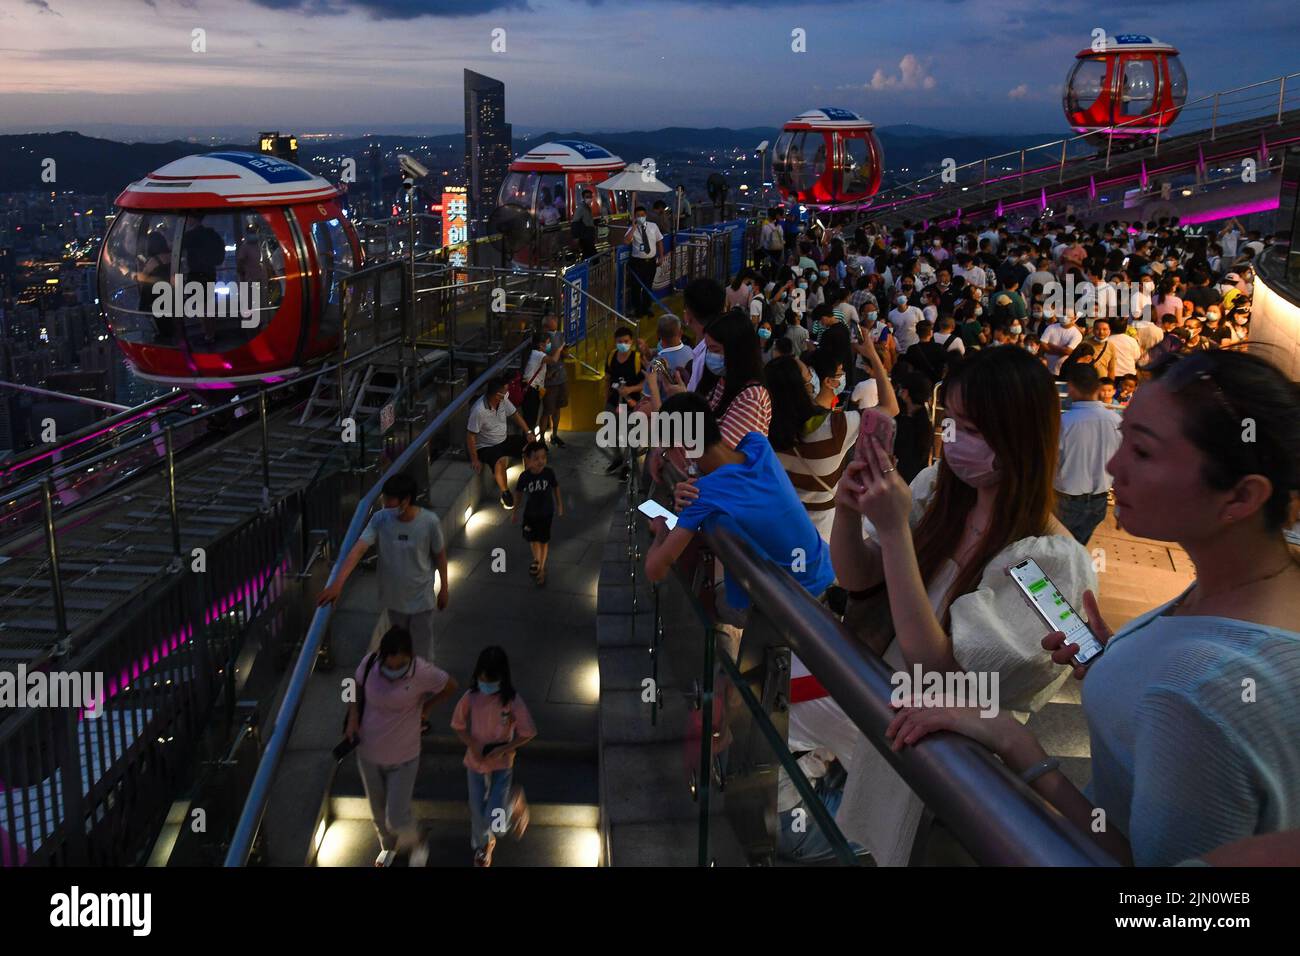 Guangzhou, Chinas Provinz Guangdong. 7. August 2022. Touristen besuchen eine Aussichtsplattform auf dem Canton Tower, einem Wahrzeichen in Guangzhou, der südchinesischen Provinz Guangdong, 7. August 2022. Touristenattraktionen, die Modernität und Geschichte verbinden, werden bei Besuchern von Guangzhou, einem der Top-Reiseziele im Sommer in China, immer beliebter. Quelle: Liu Dawei/Xinhua/Alamy Live News Stockfoto